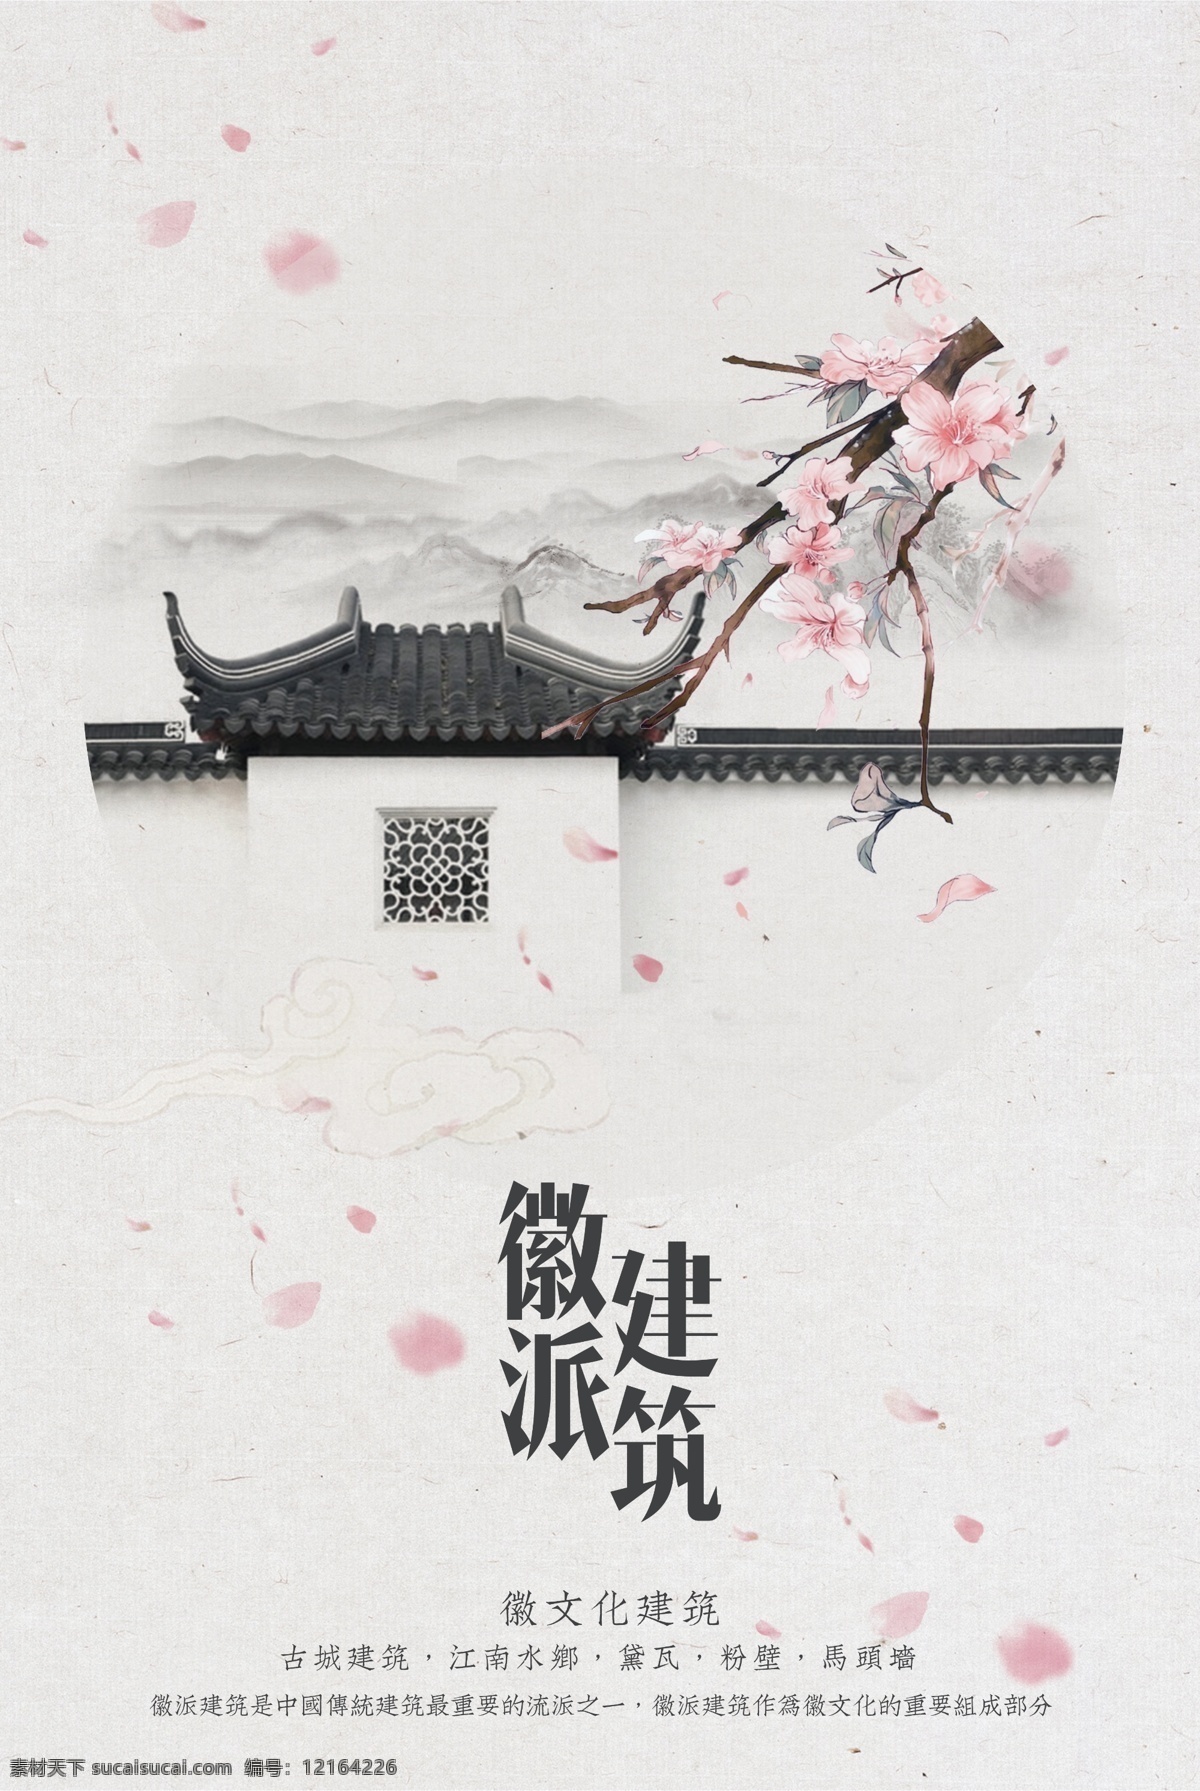 古文化 古建筑 古代建筑 古典建筑 宫殿 中国风 中国风展板 文化艺术 传统文化 门店广告